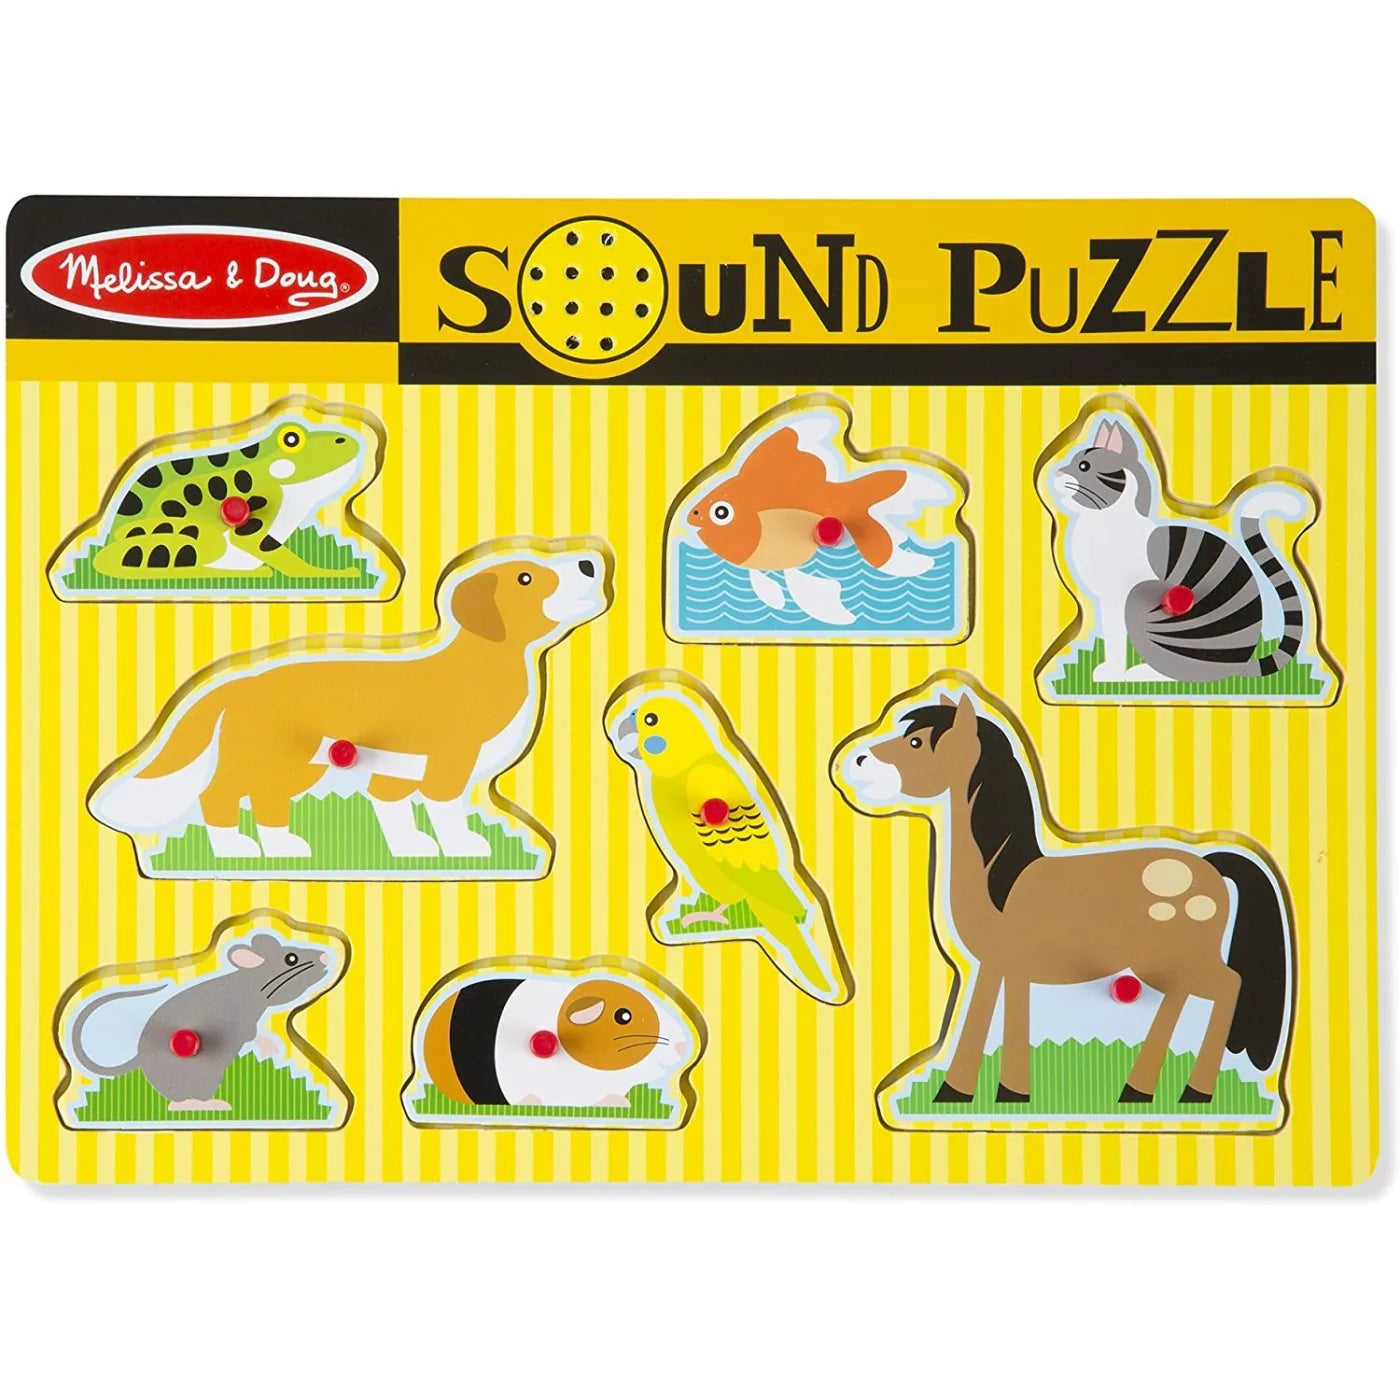 Pets Sound Puzzle